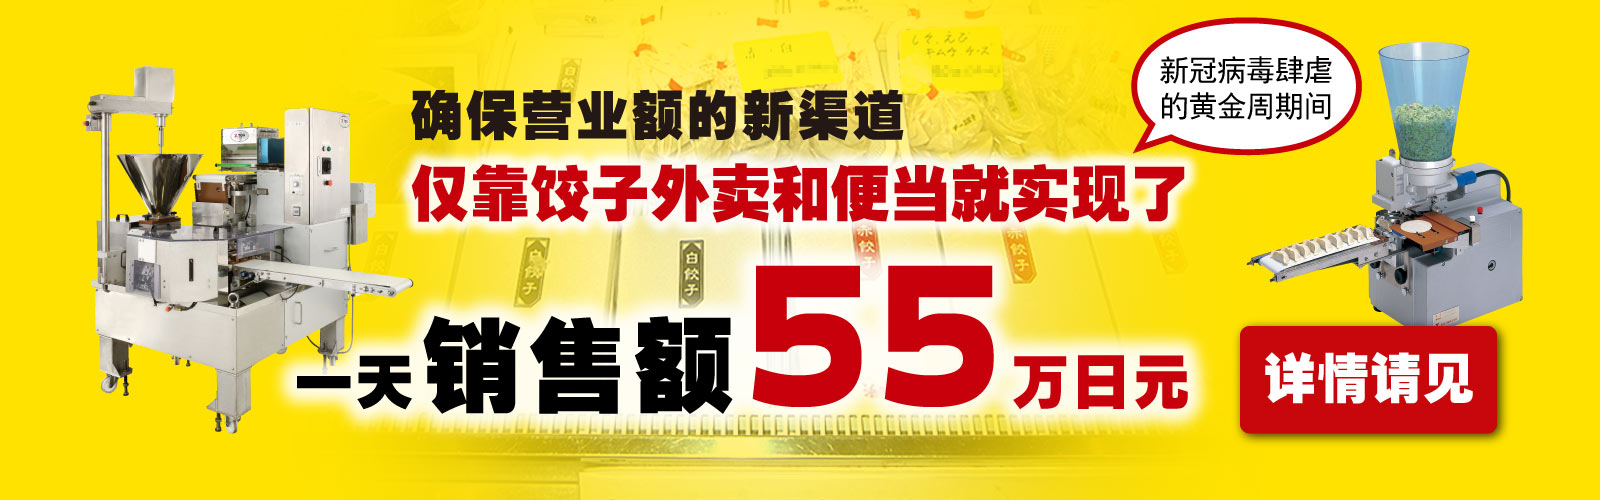 确保营业额的新渠道  仅靠饺子外卖和便当就实现了一天销售额45万日元